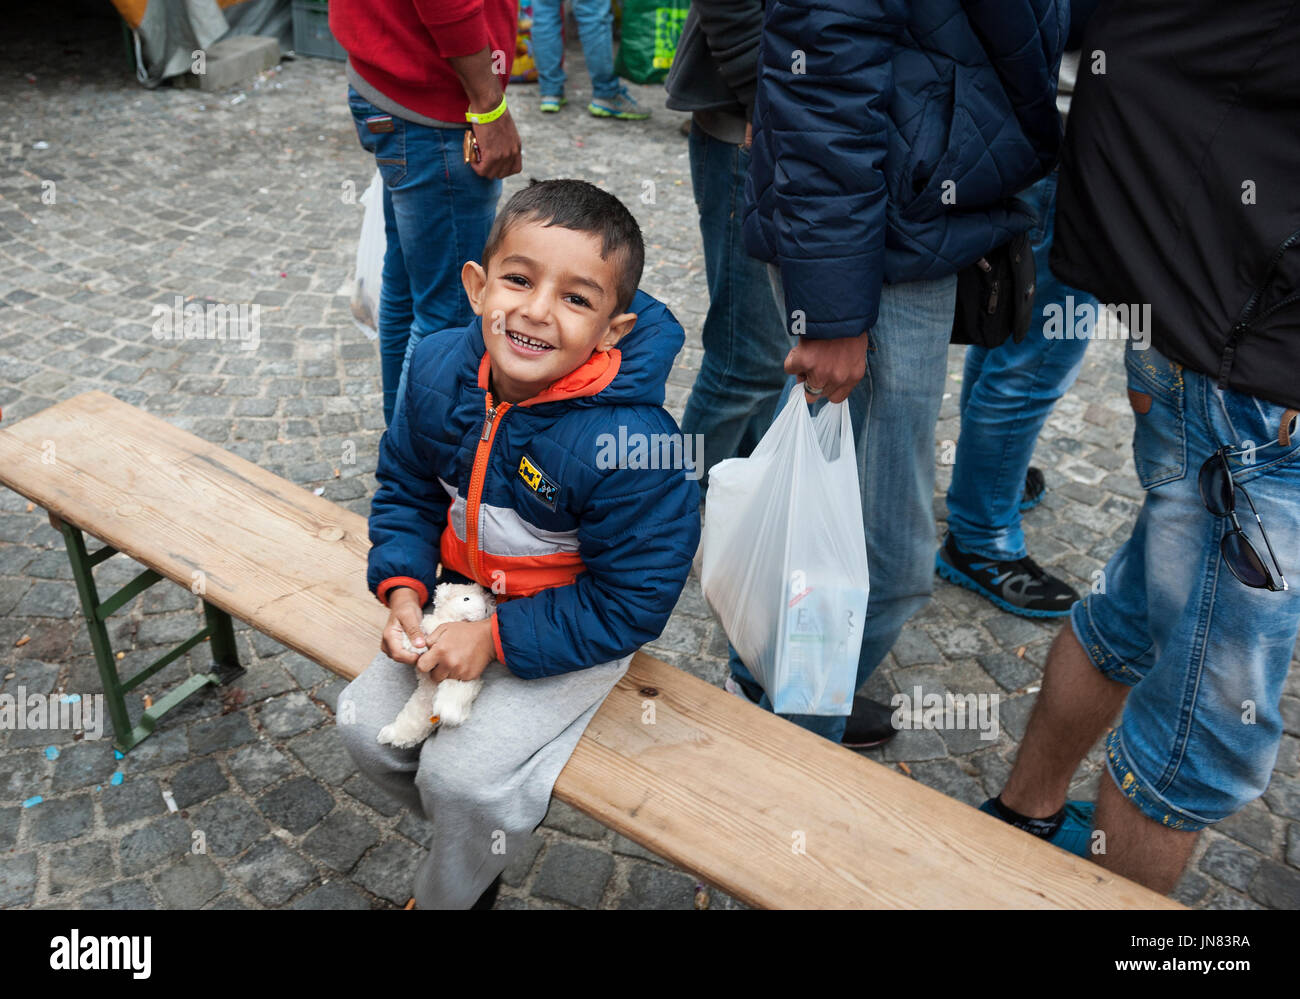 Monaco di Baviera, Germania - 7 Settembre 2015: bambini profughi dalla Siria alla Stazione Centrale di Monaco, Germania. Il giovane ragazzo sorride dopo l arrivo in Germania. Foto Stock